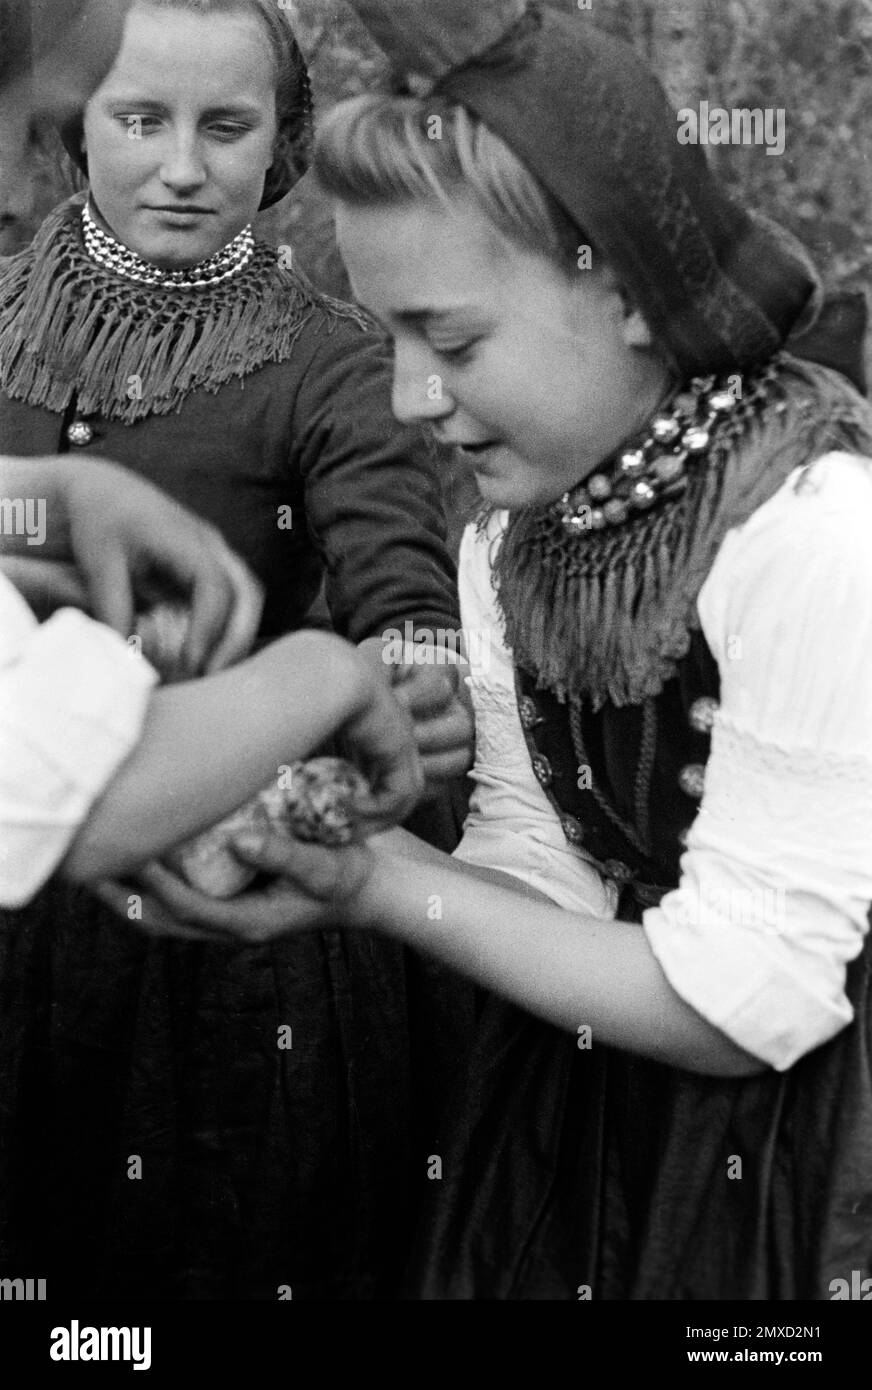 Junge Frau in Tracht mit gefundenen Ostereiern, Schwalm-Eder-Kreis in Hessen, 1938. Junge Frau in traditionellem Kostüm mit gefundenen Ostereiern, Schwalm-Eder-Region in Hessen, 1938. Stockfoto